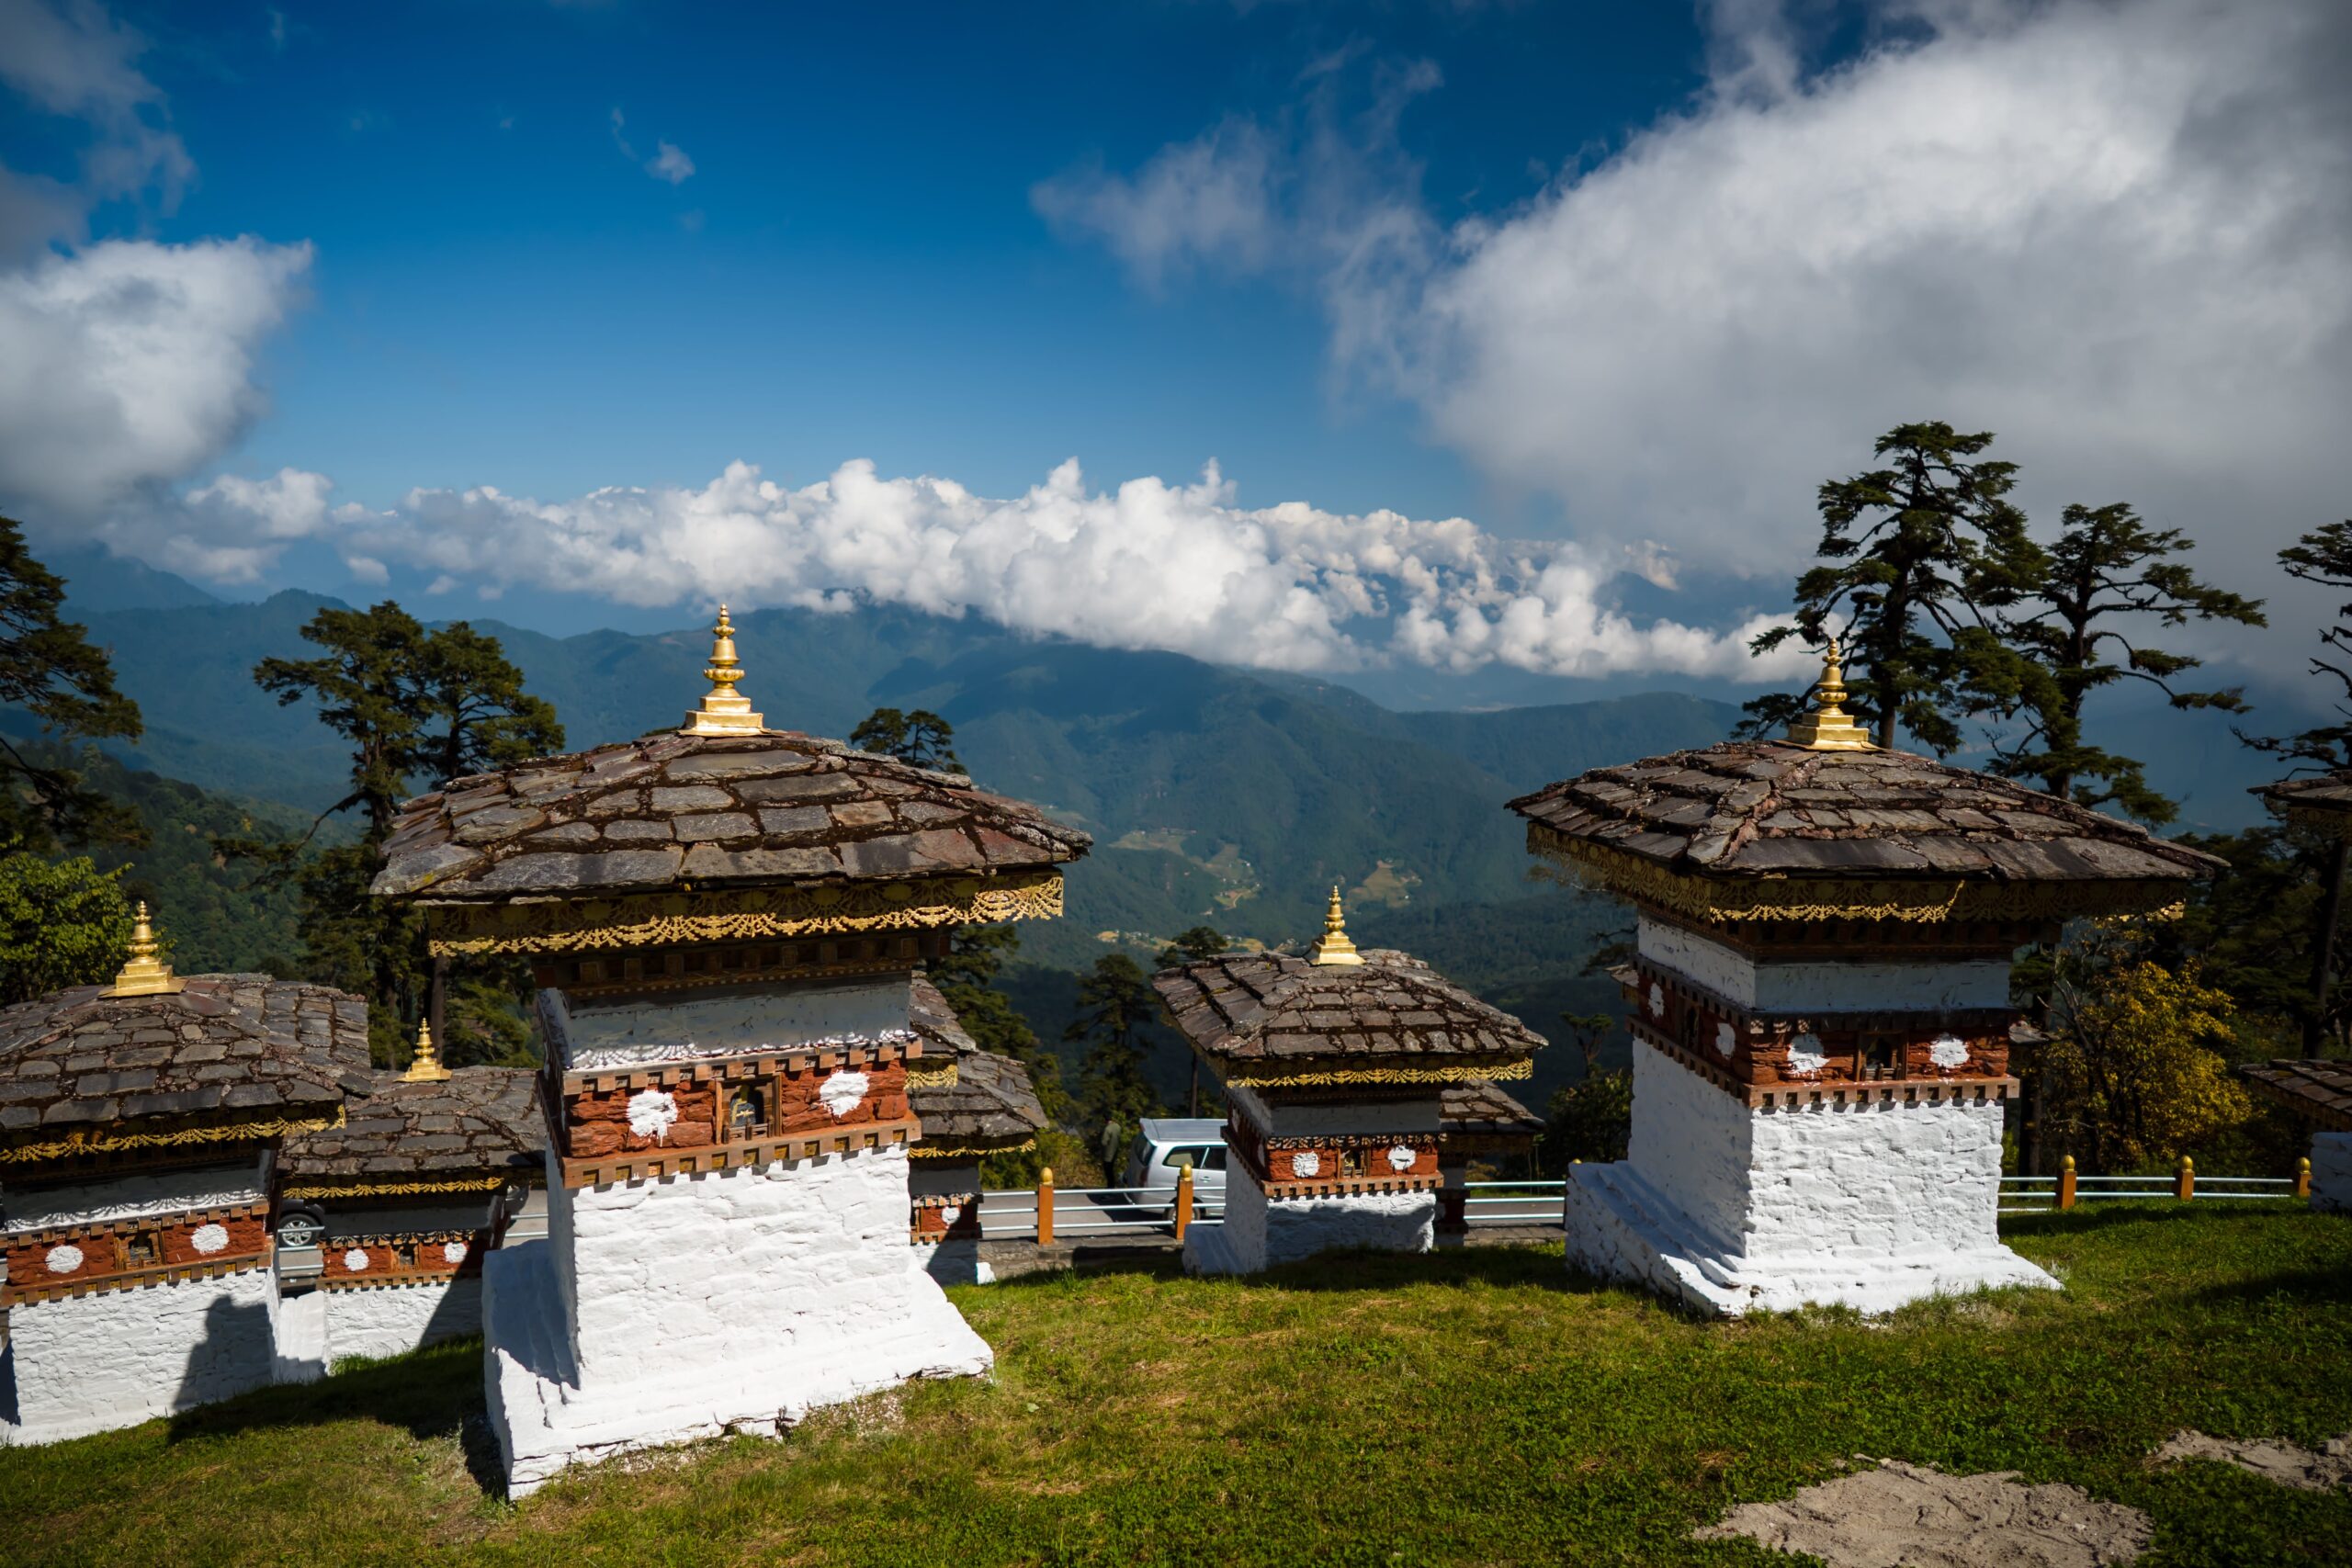 108 Memorial Chortens of Dochula Pass in Thimphu, Bhutan. Dochula Pass with Himalaya in background - Bhutan